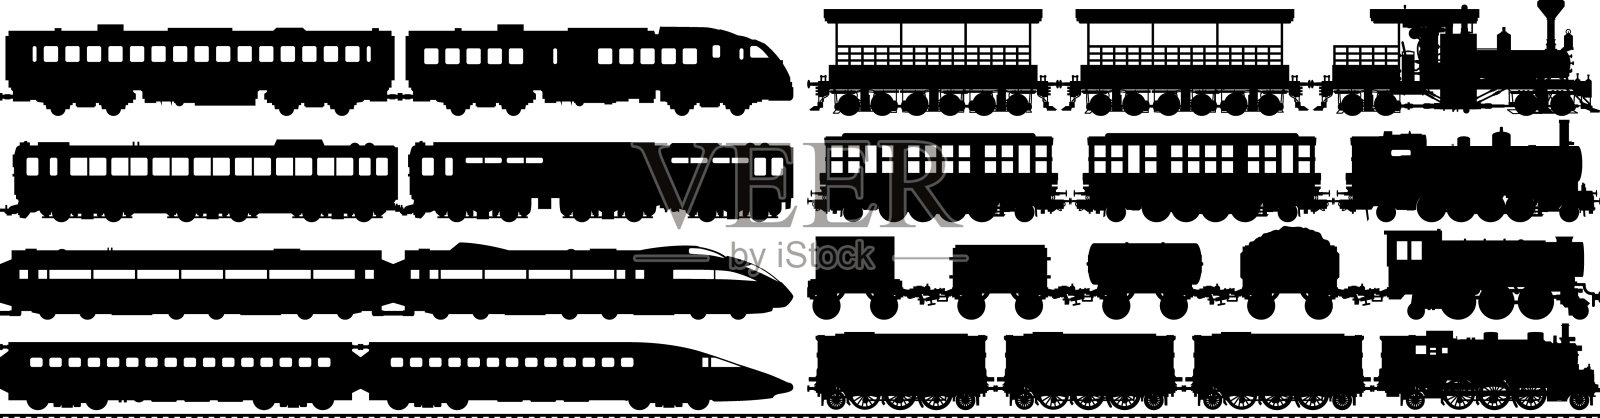 高度详细的火车剪影插画图片素材